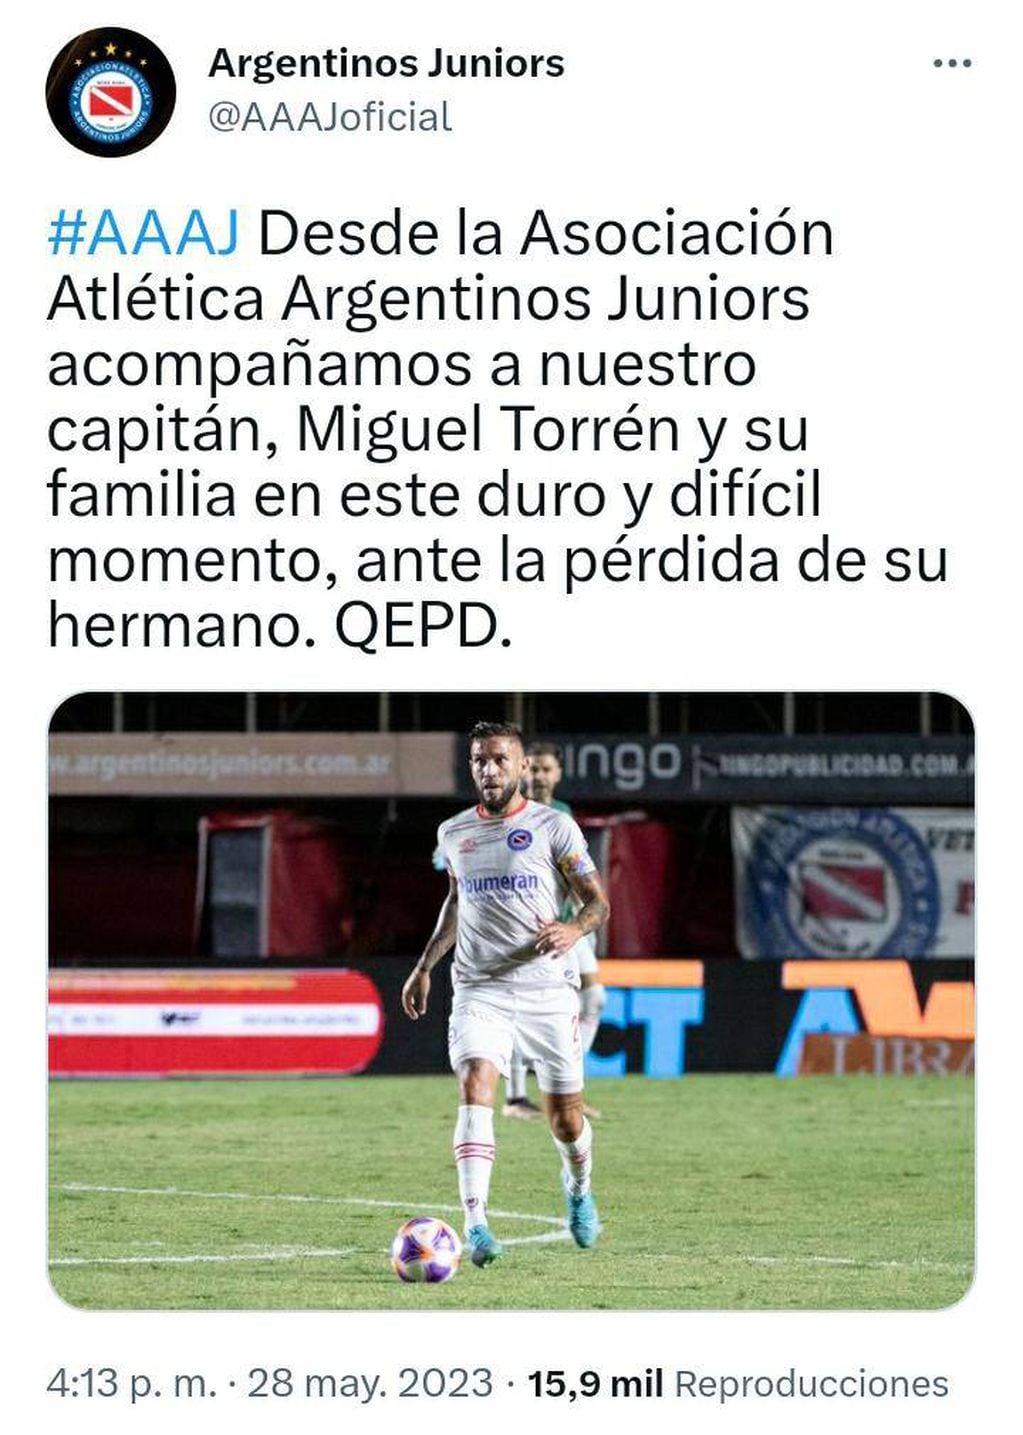 Miguel Torrén perdió a su hermano José Sixto, asesinado en Rosario. Argentinos Juniors se solidarizó con el futbolista y su familia luego del crimen.